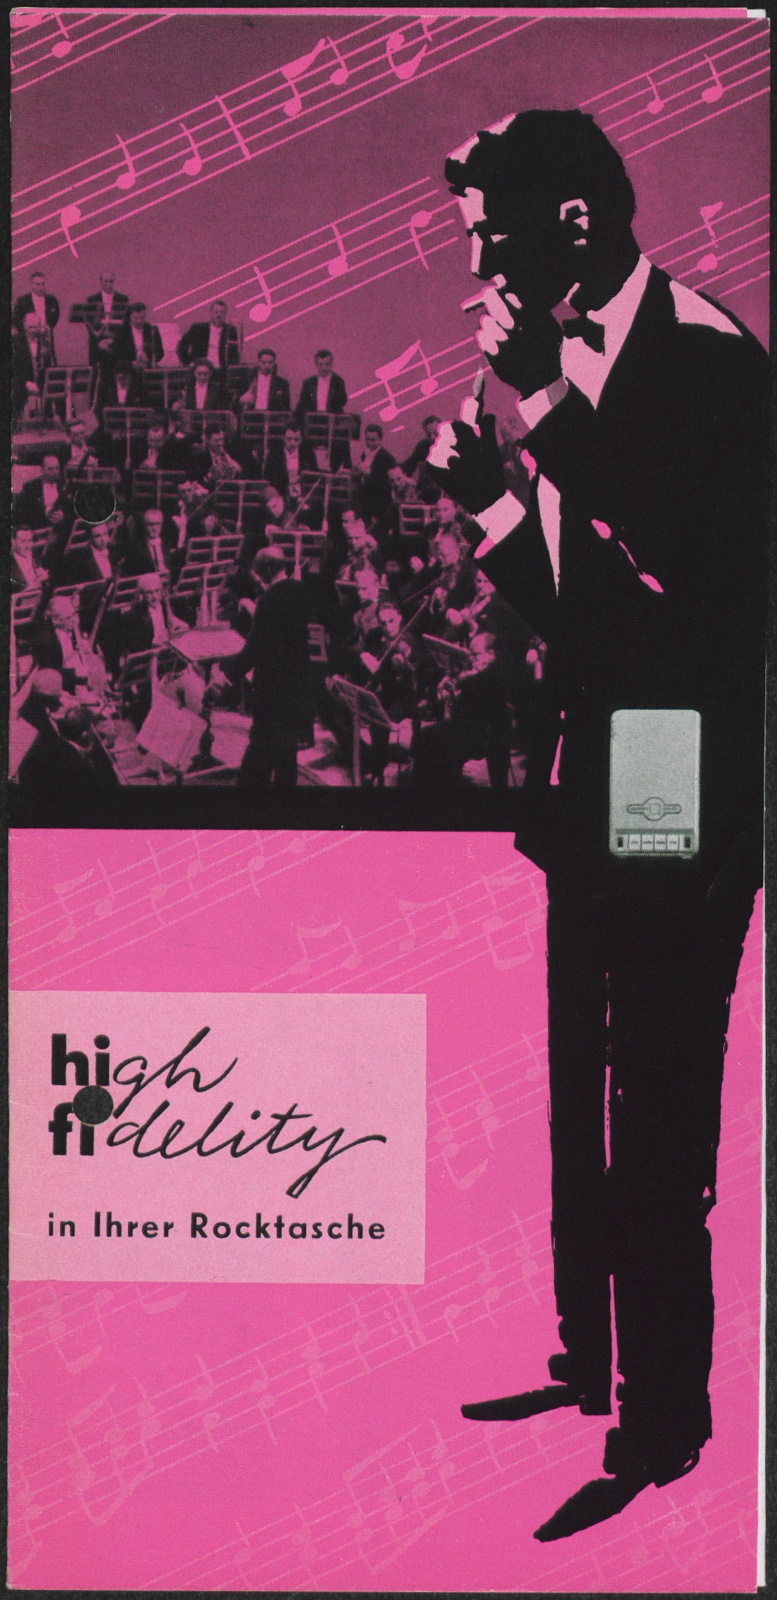 Werbeprospekt: high fidelity in Ihrer Rocktasche (Stiftung Deutsches Technikmuseum Berlin CC0)